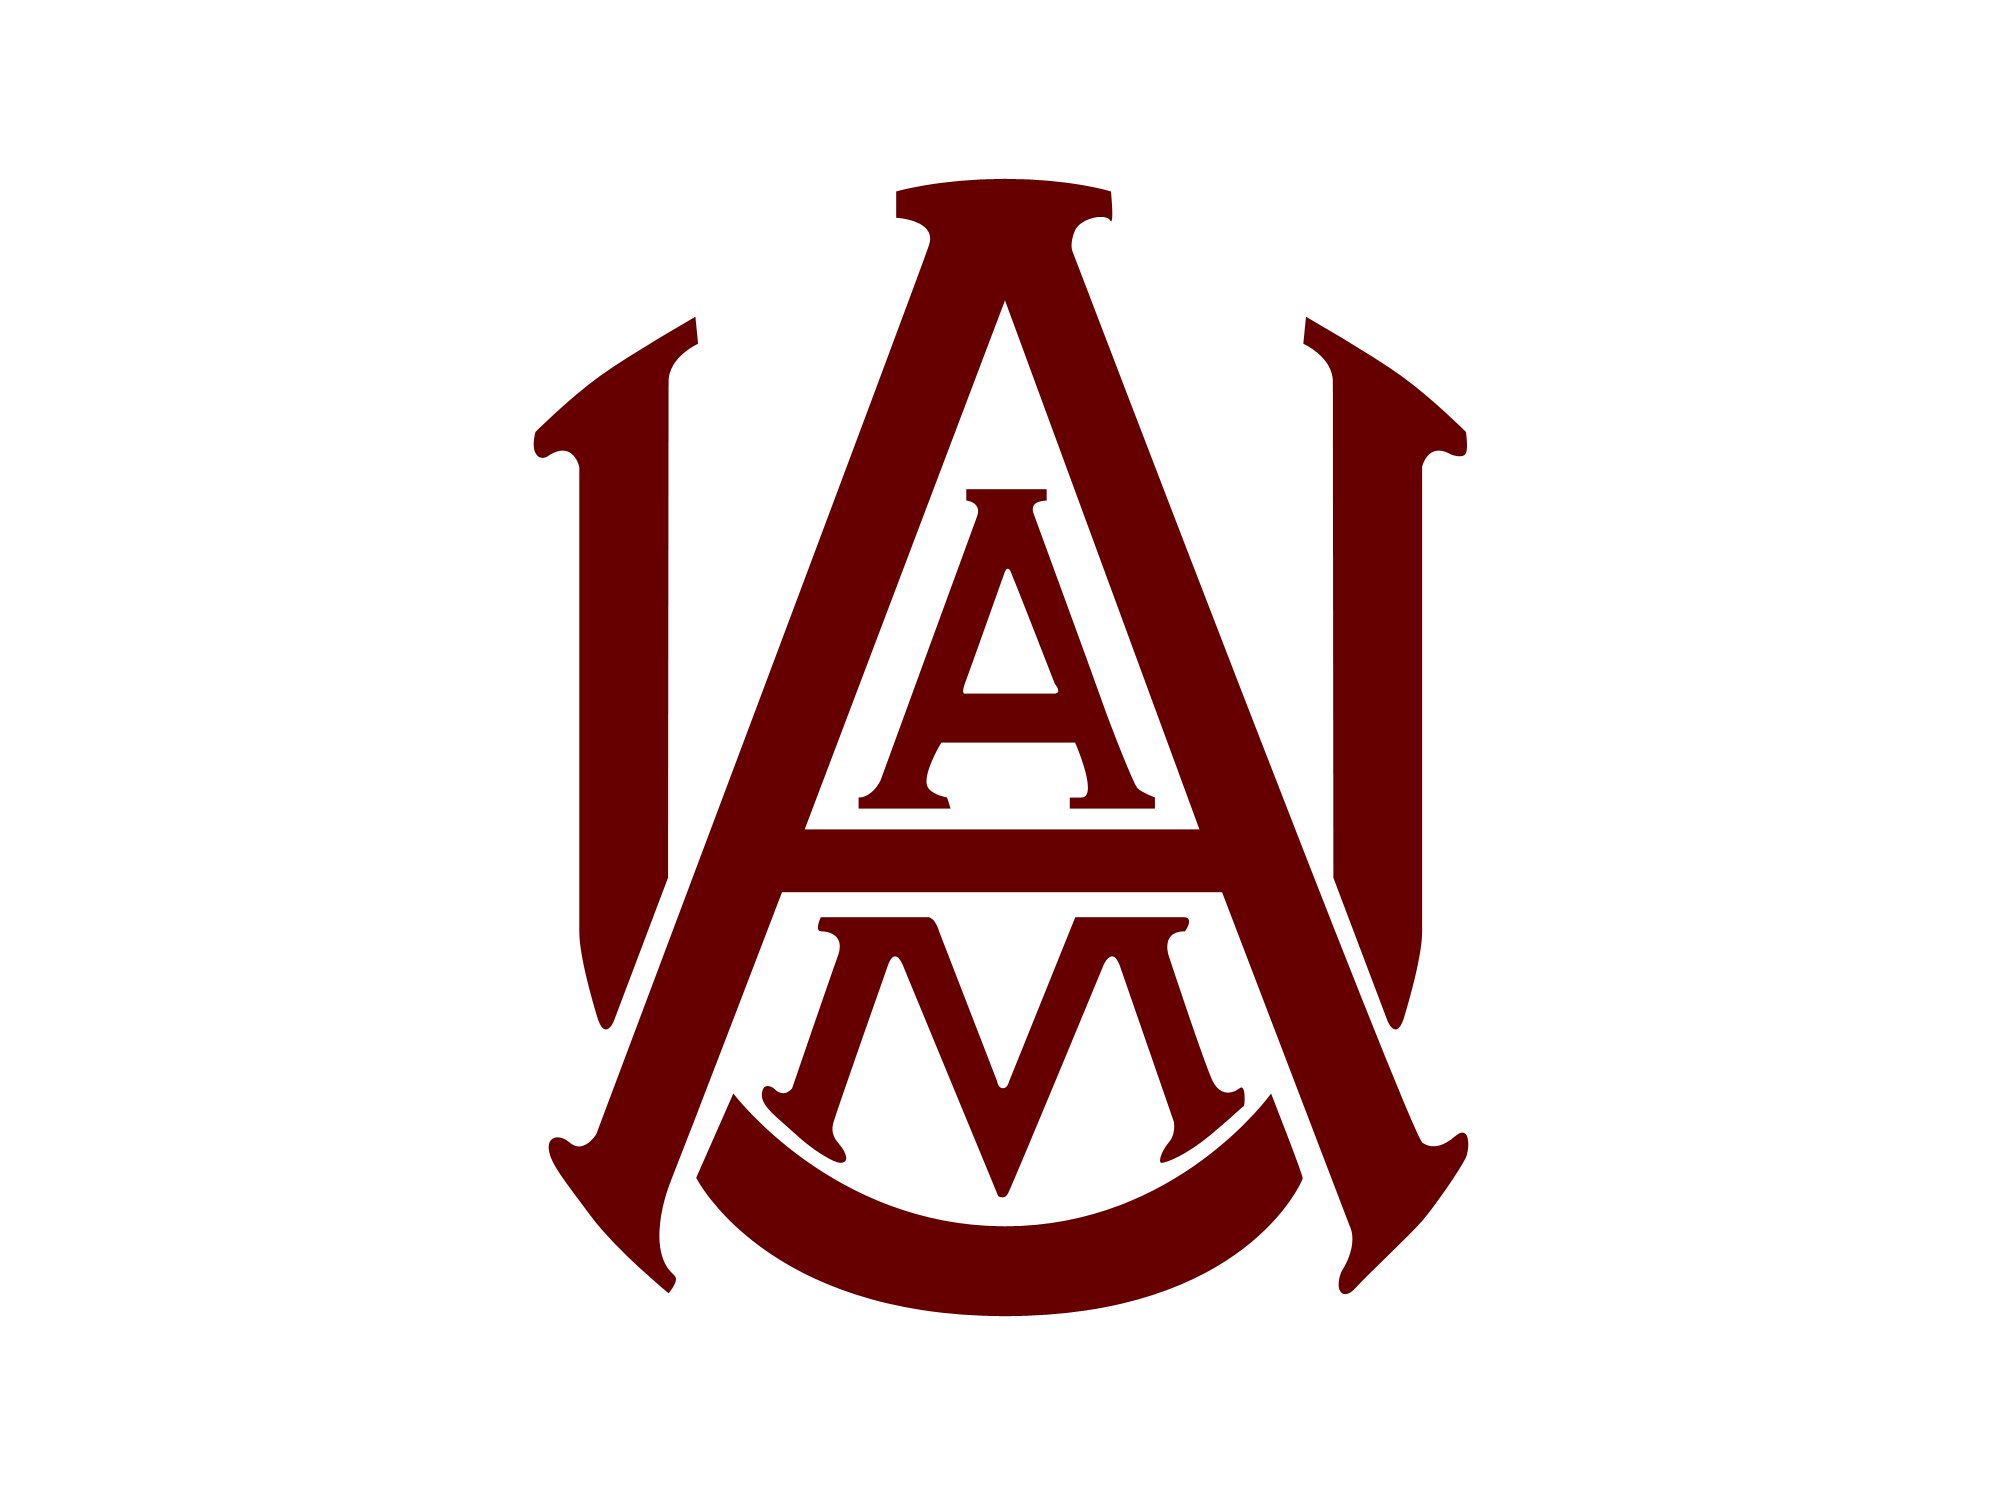 team-a-logo